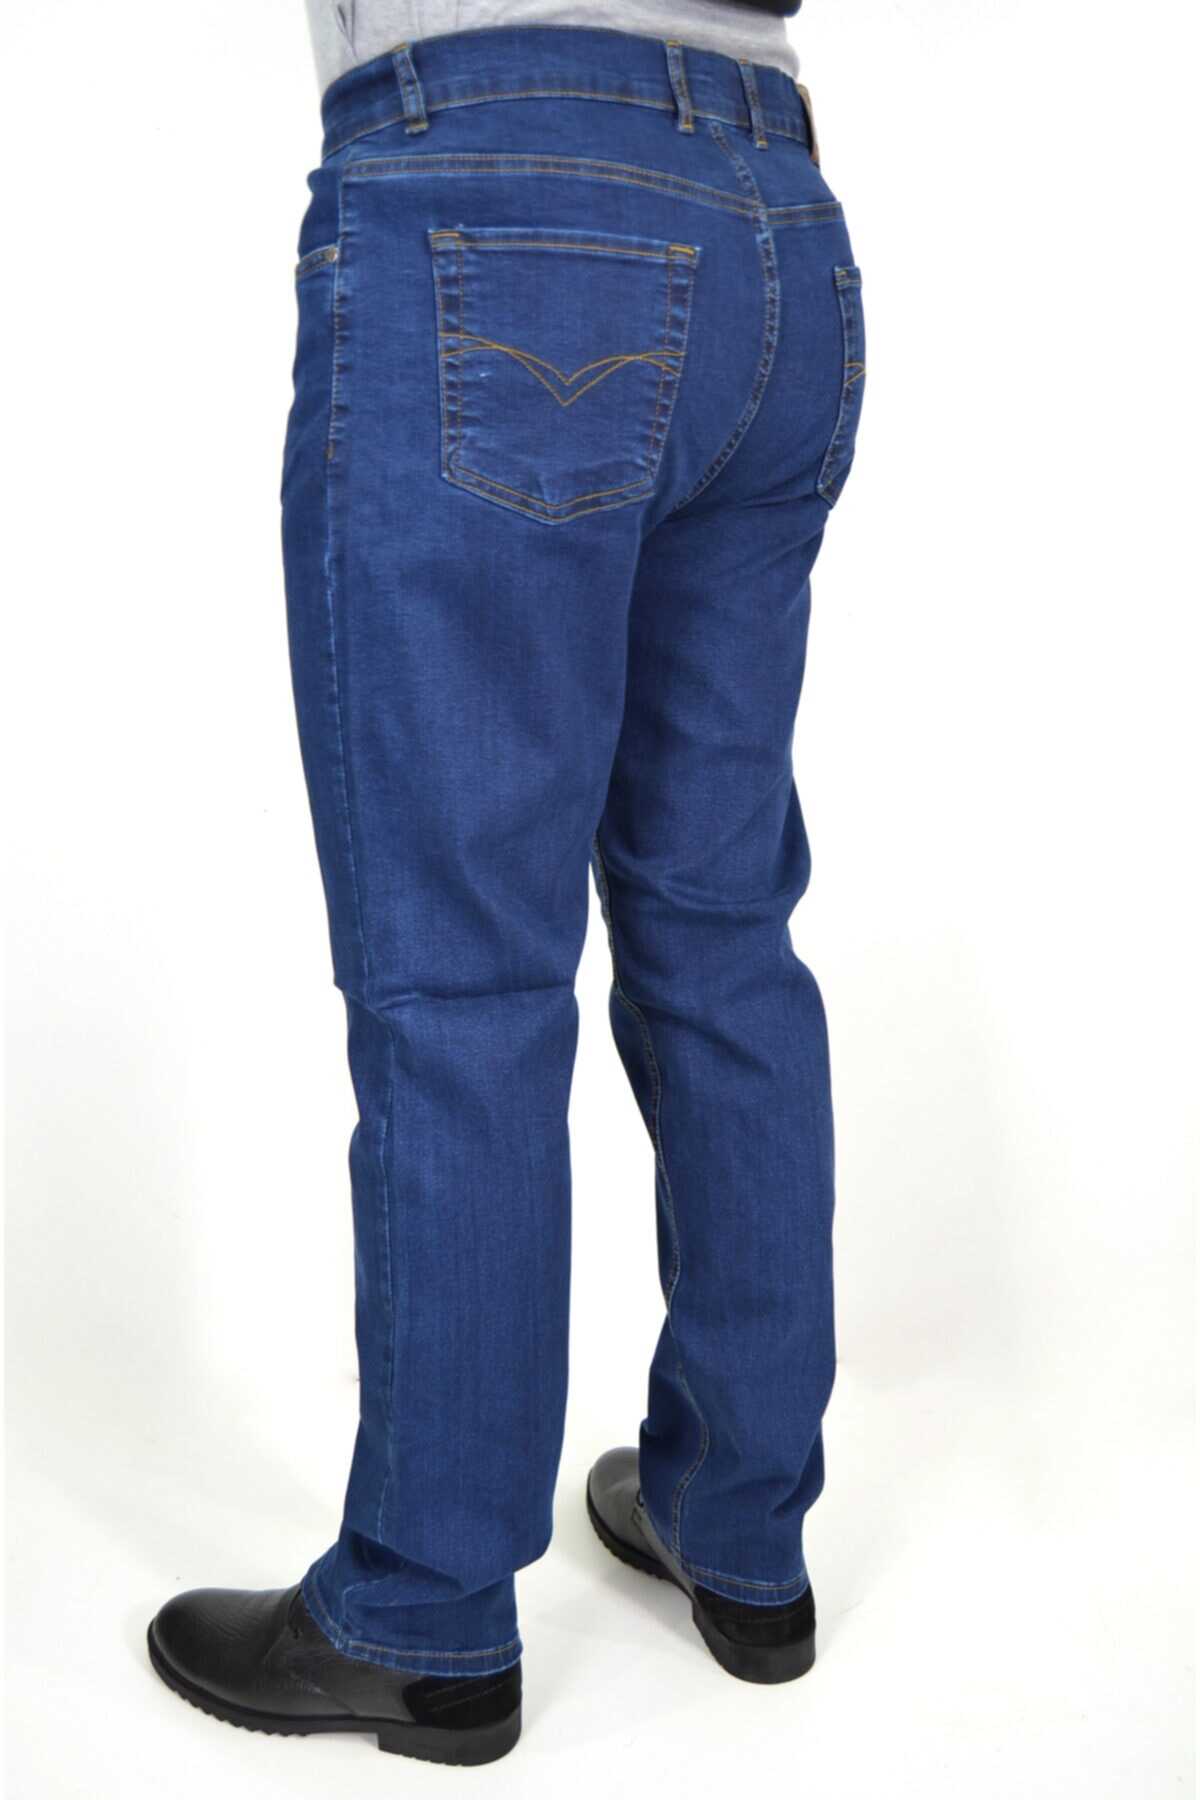 شلوار جین مردانه سایز بزرگ فاق بلند آبی تیره برند ds danlıspor